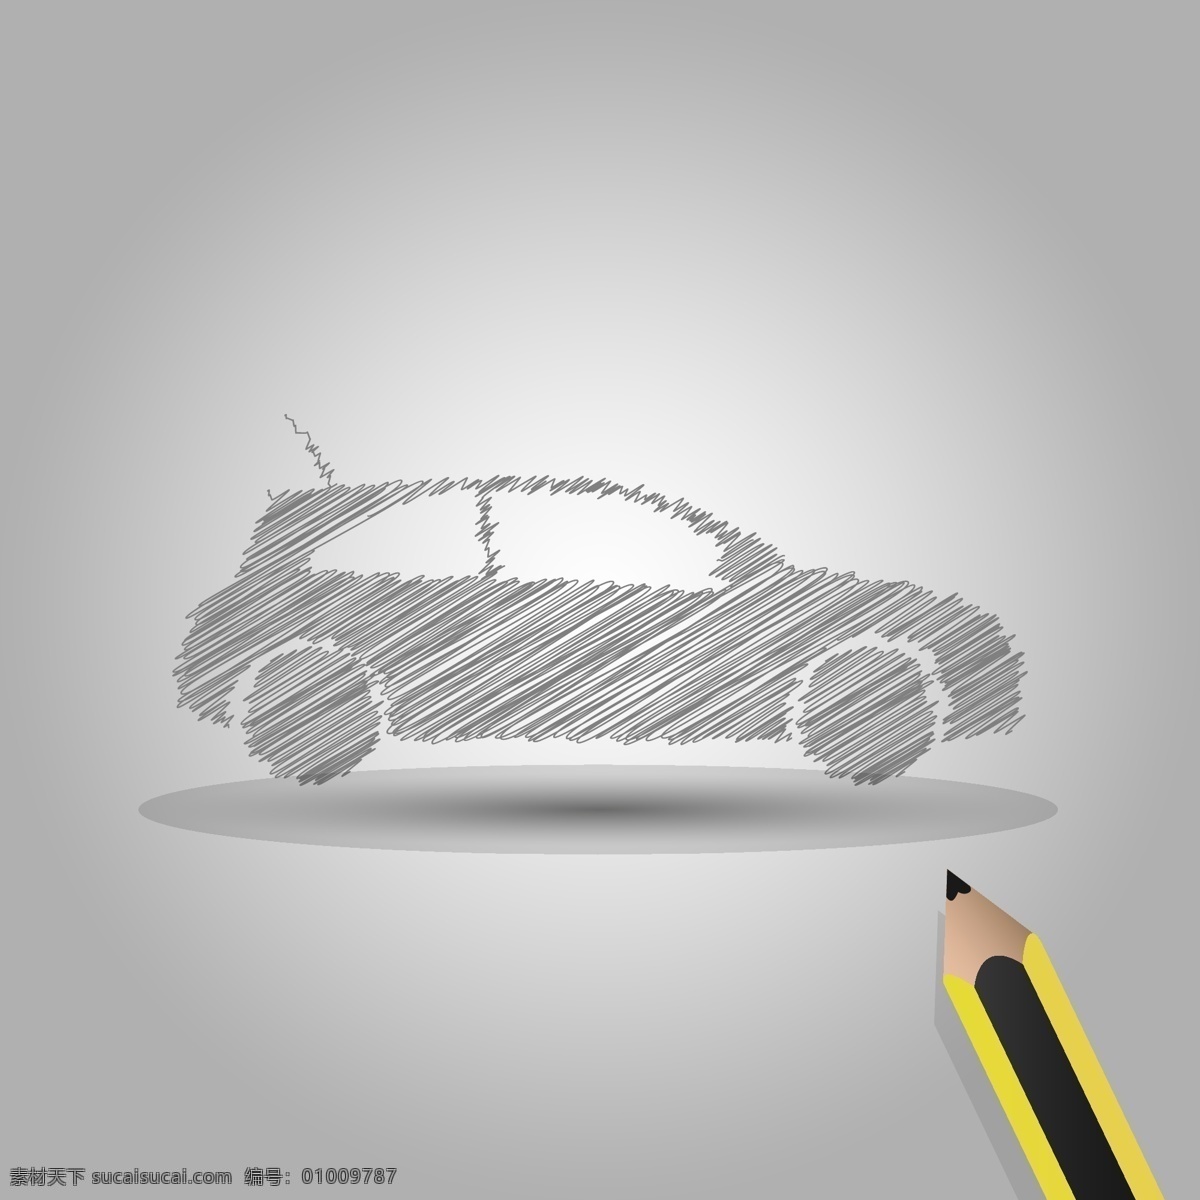 手绘 汽车 创意 铅笔 矢量图 其他矢量图